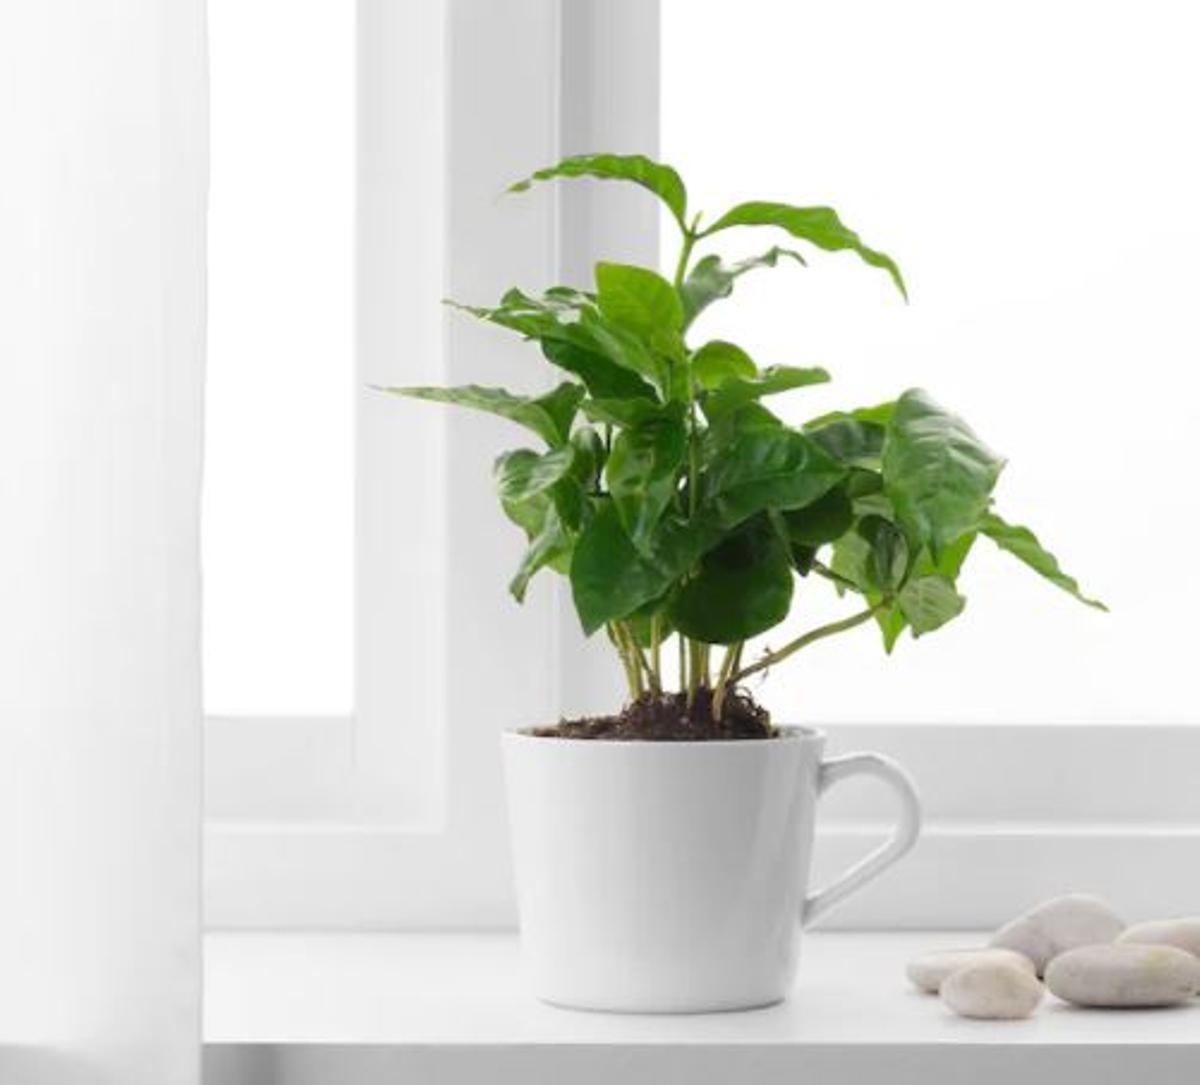 PLANTAS | Coffea arabica: la planta del café que puedes conseguir en Ikea